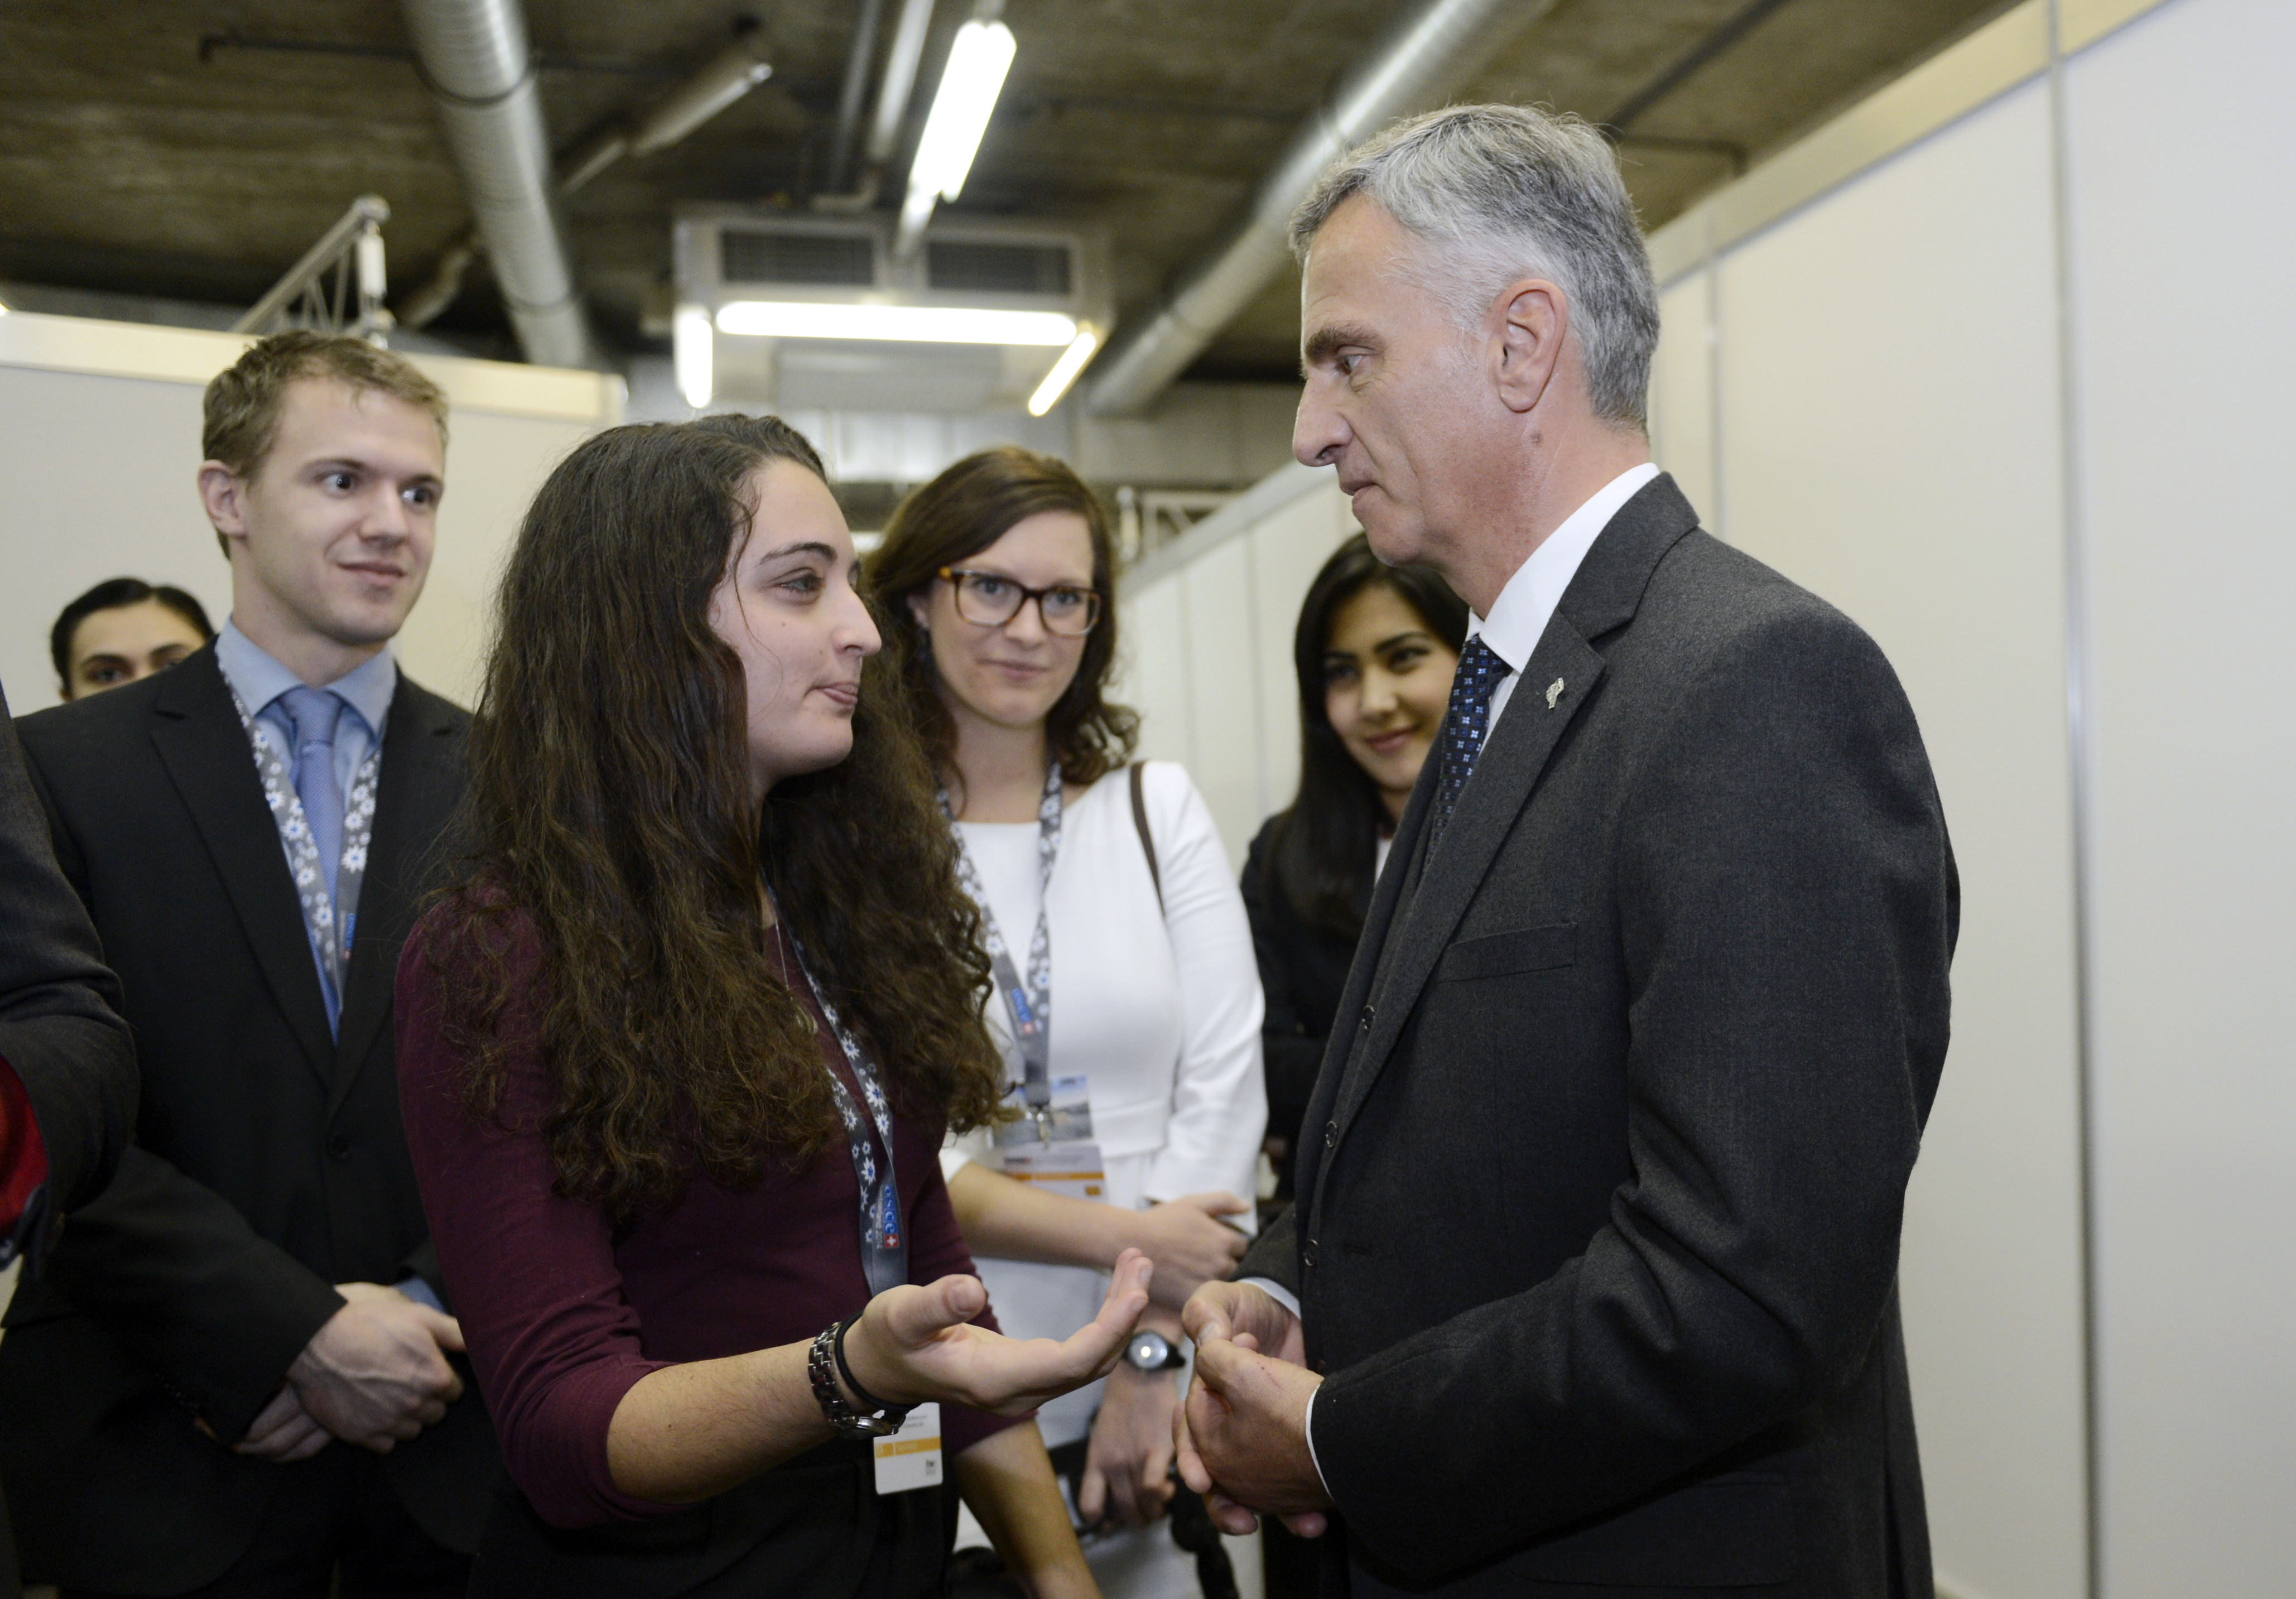 Le ministre des affaires étrangères Didier Burkhalter rencontre des ambassadeurs de la jeunesse de l'OSCE en marge de la réunion du Conseil ministériel 2014